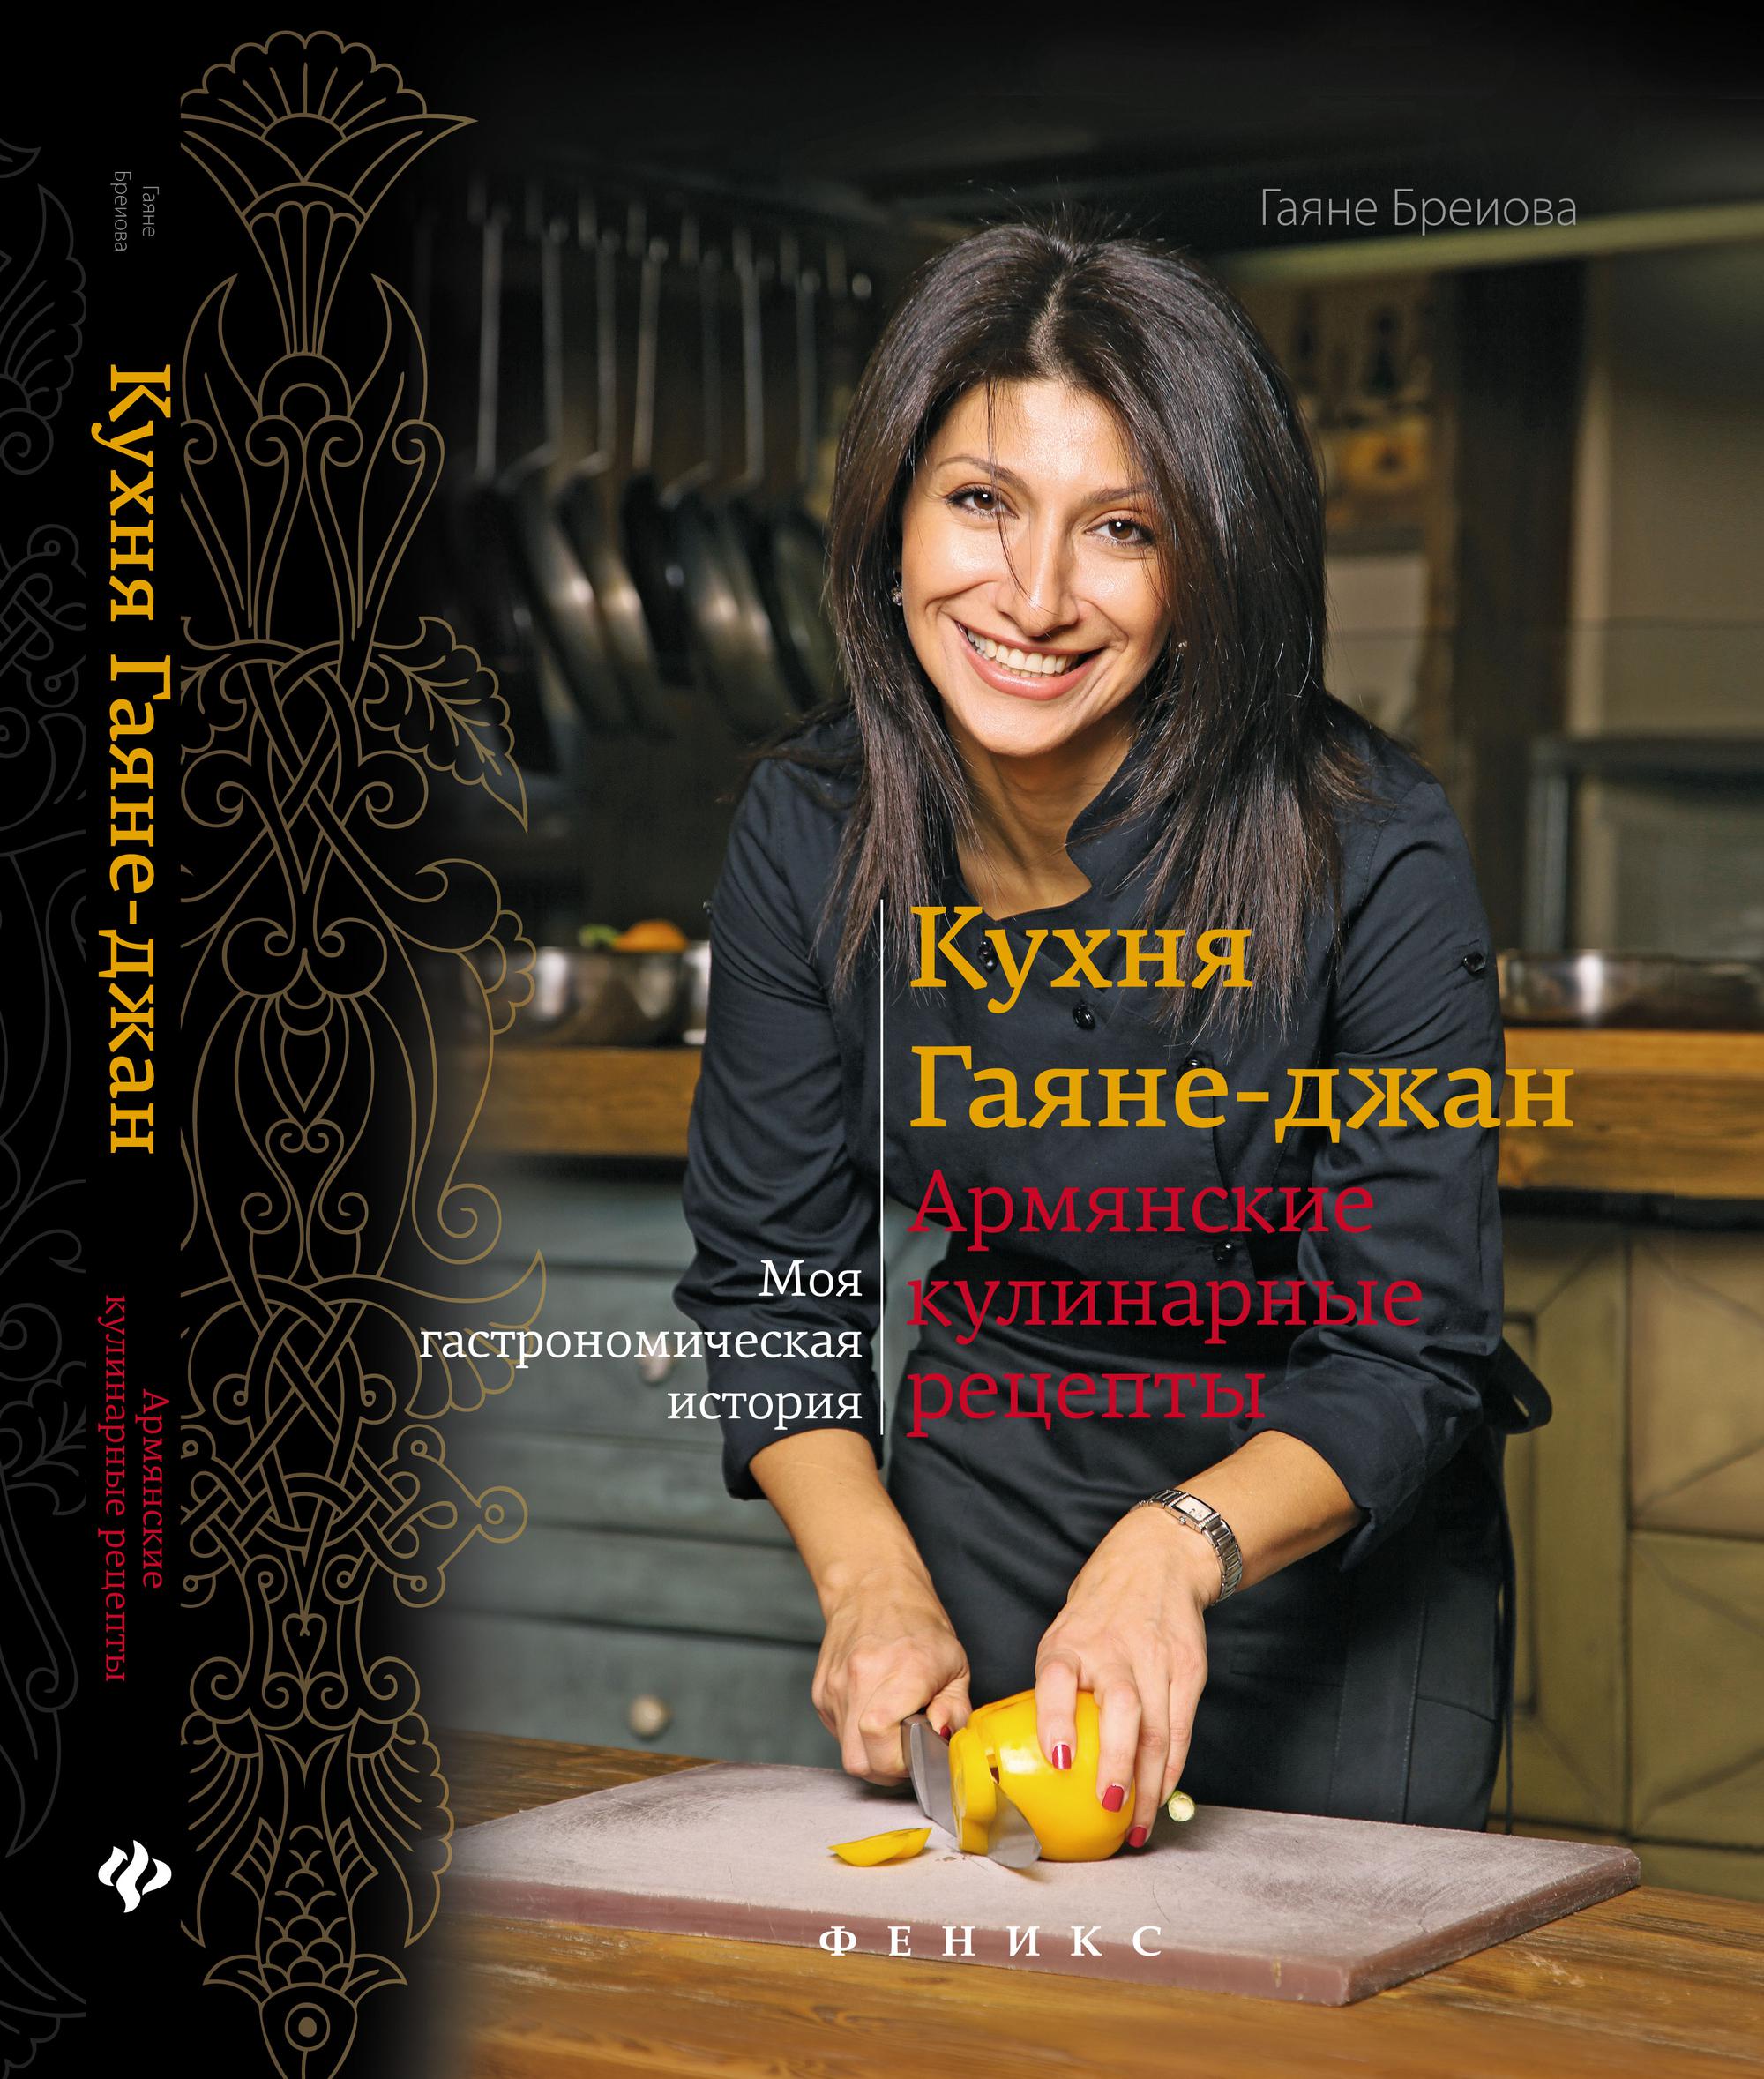 Что означает по армянски джан. Гаяне Бреиова армянская кухня. Гаяне Джан. Гаяне Бреиова Возраст. Армянская кухня книга.